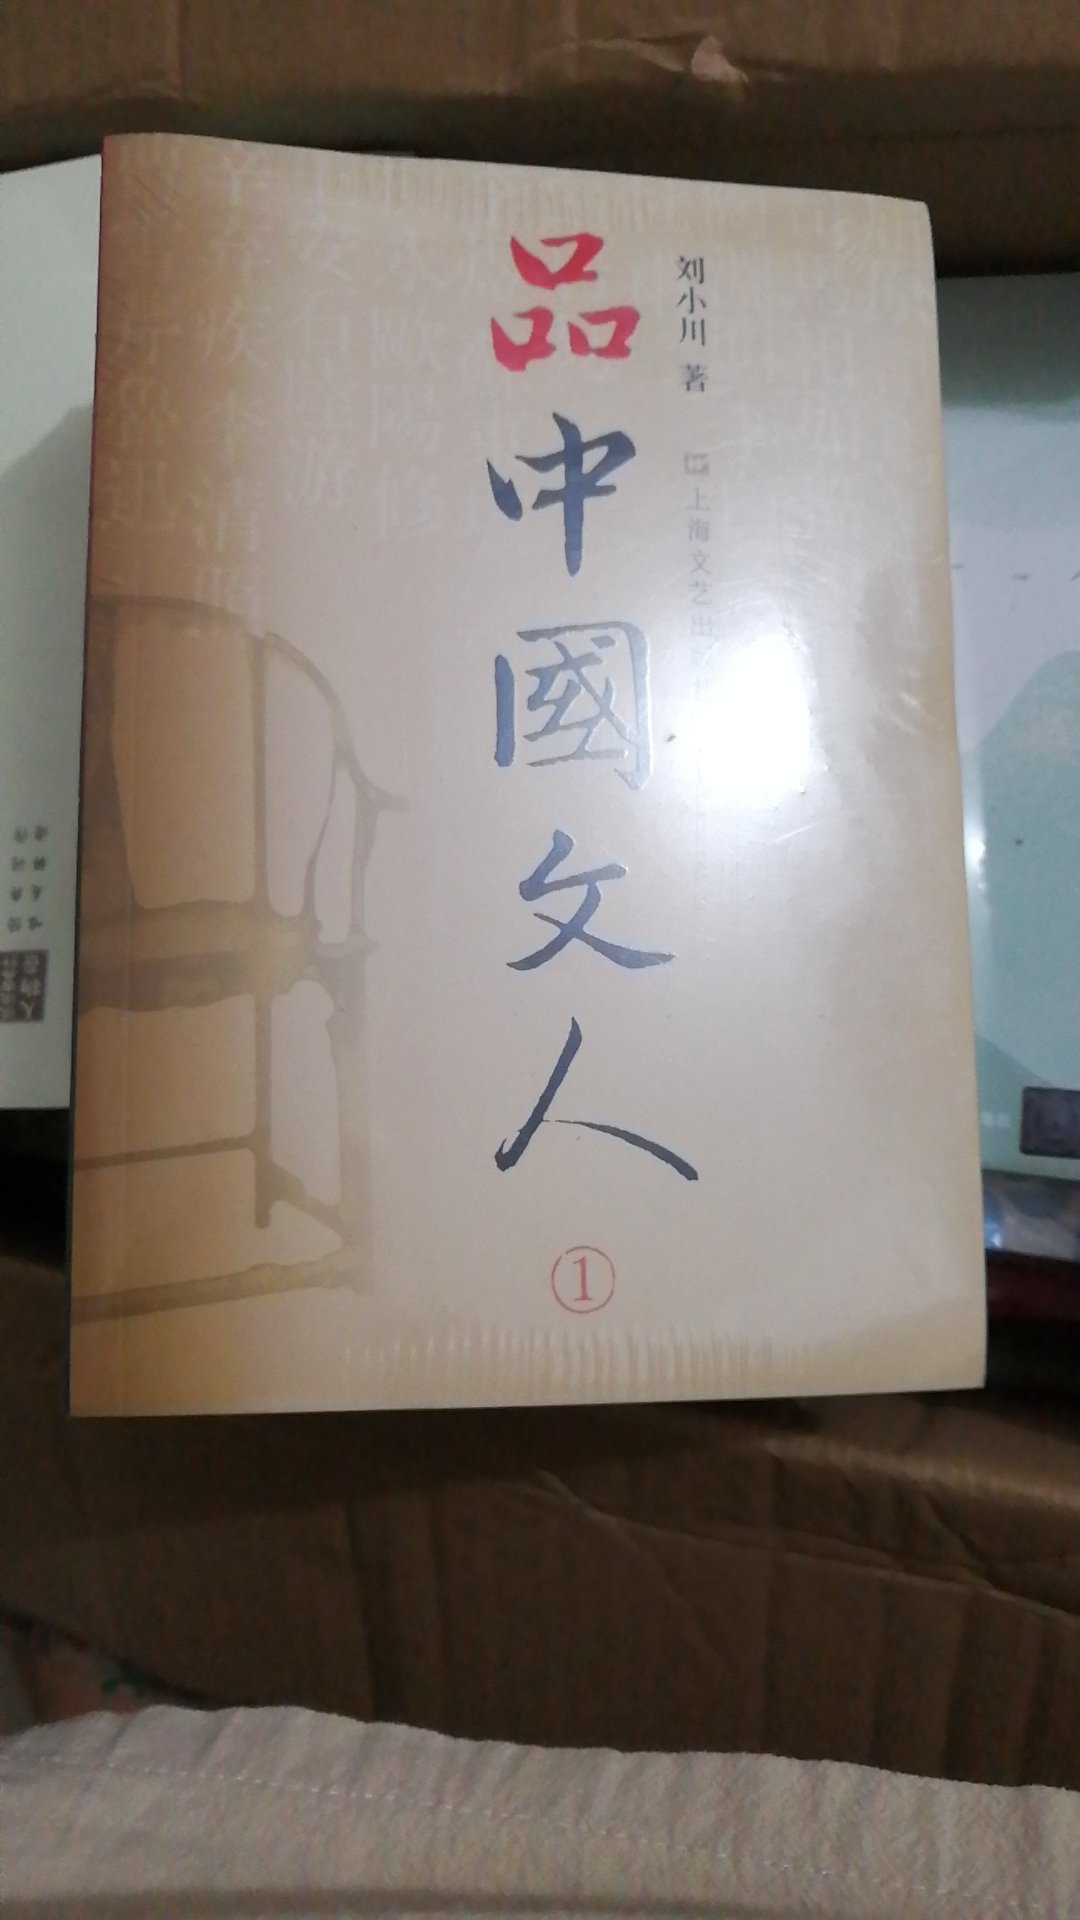 书中内容丰富，笔下人物各具风采，一部中国文人的心灵史